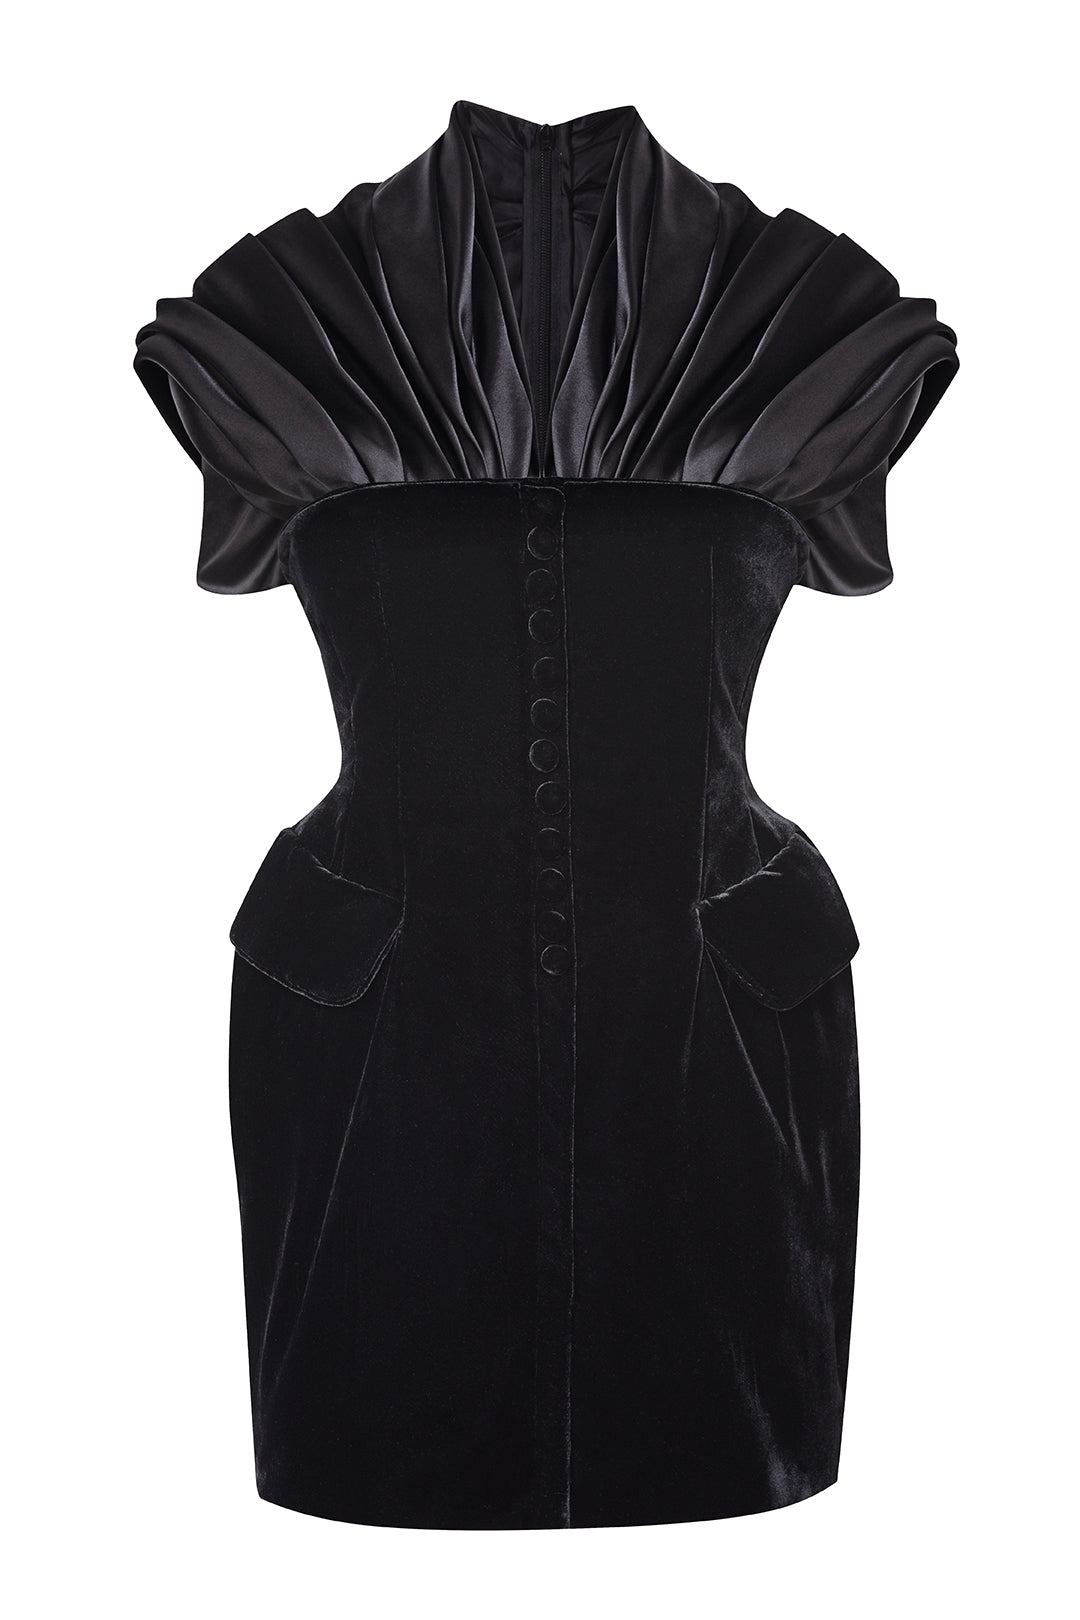 Triple Black Corset Dress